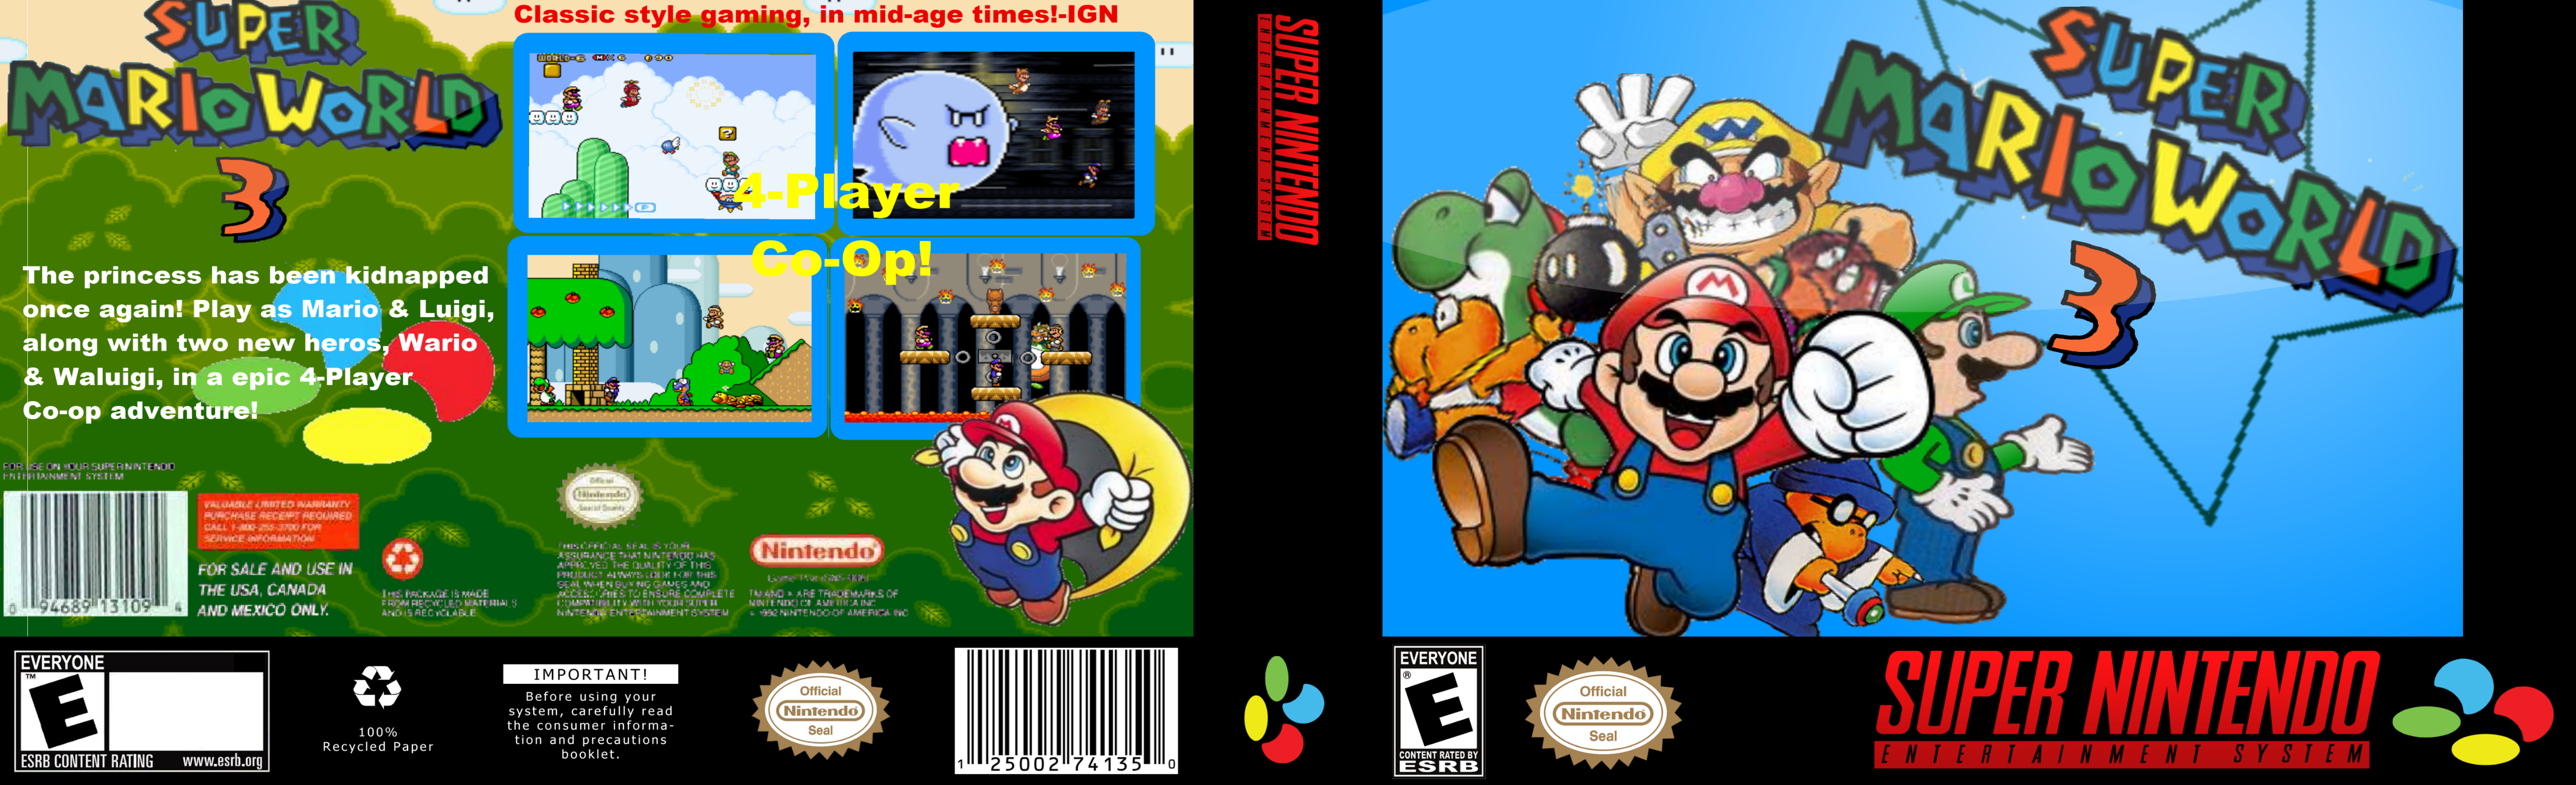 Super Mario World 3 box cover